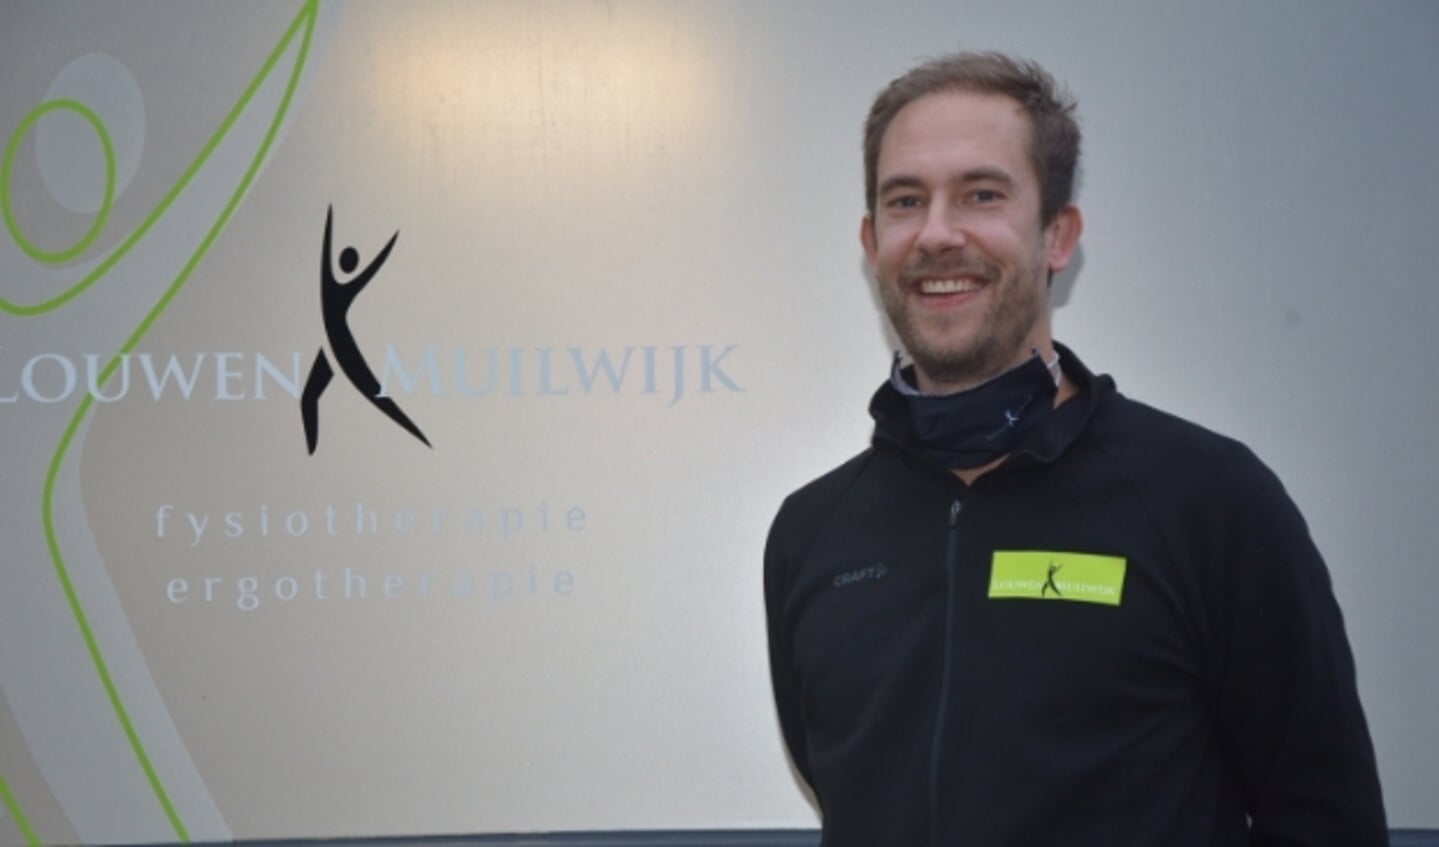 Cees de Wolf, fysiotherapeut bij Louwen & Muilwijk: “We krijgen steeds meer inzicht in de vereiste aanpak bij mensen die van corona zijn genezen.”